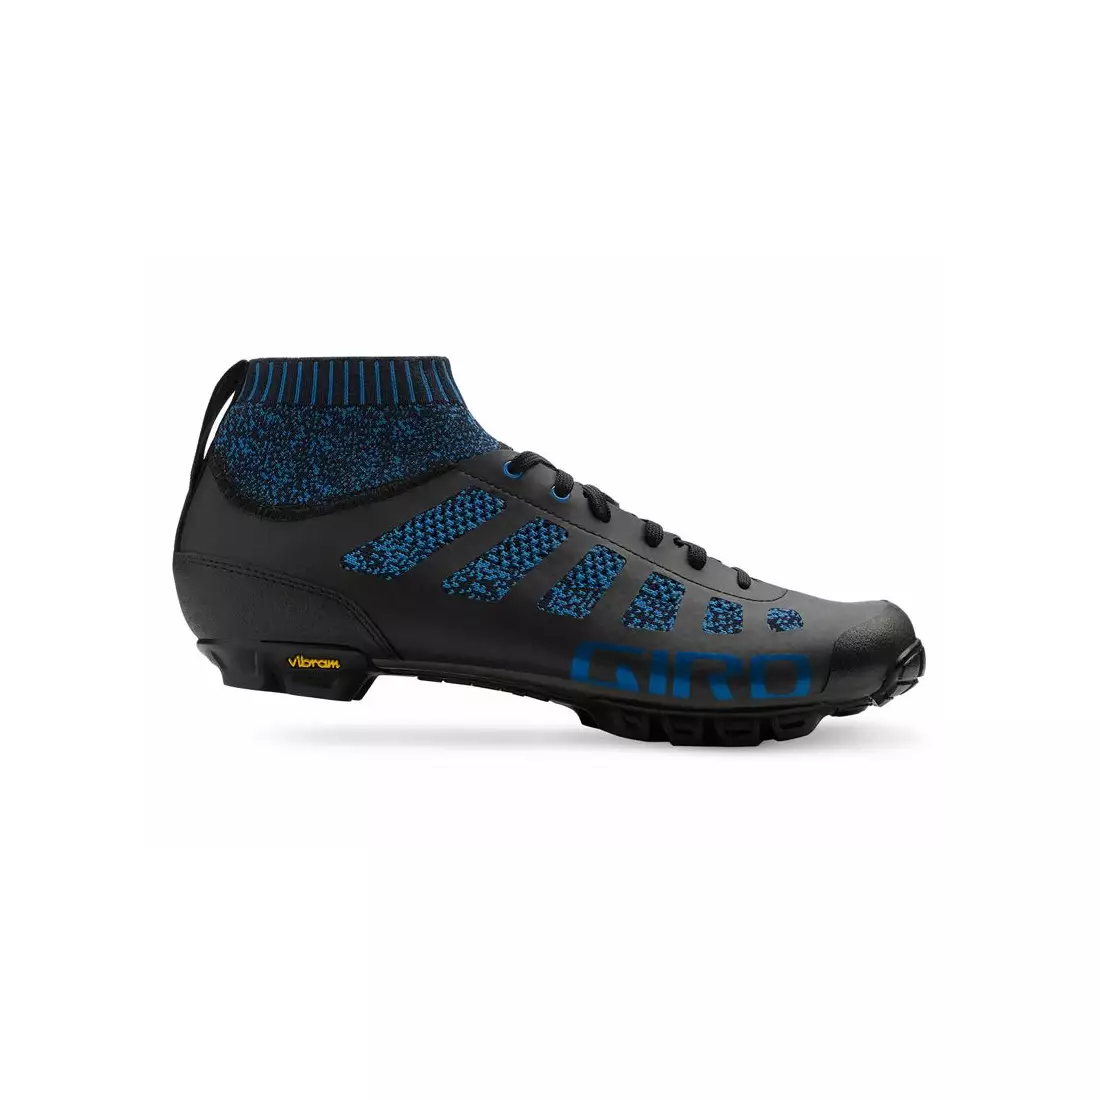 Pánská cyklistická obuv GIRO EMPIRE VR70 Knit midnight blue 